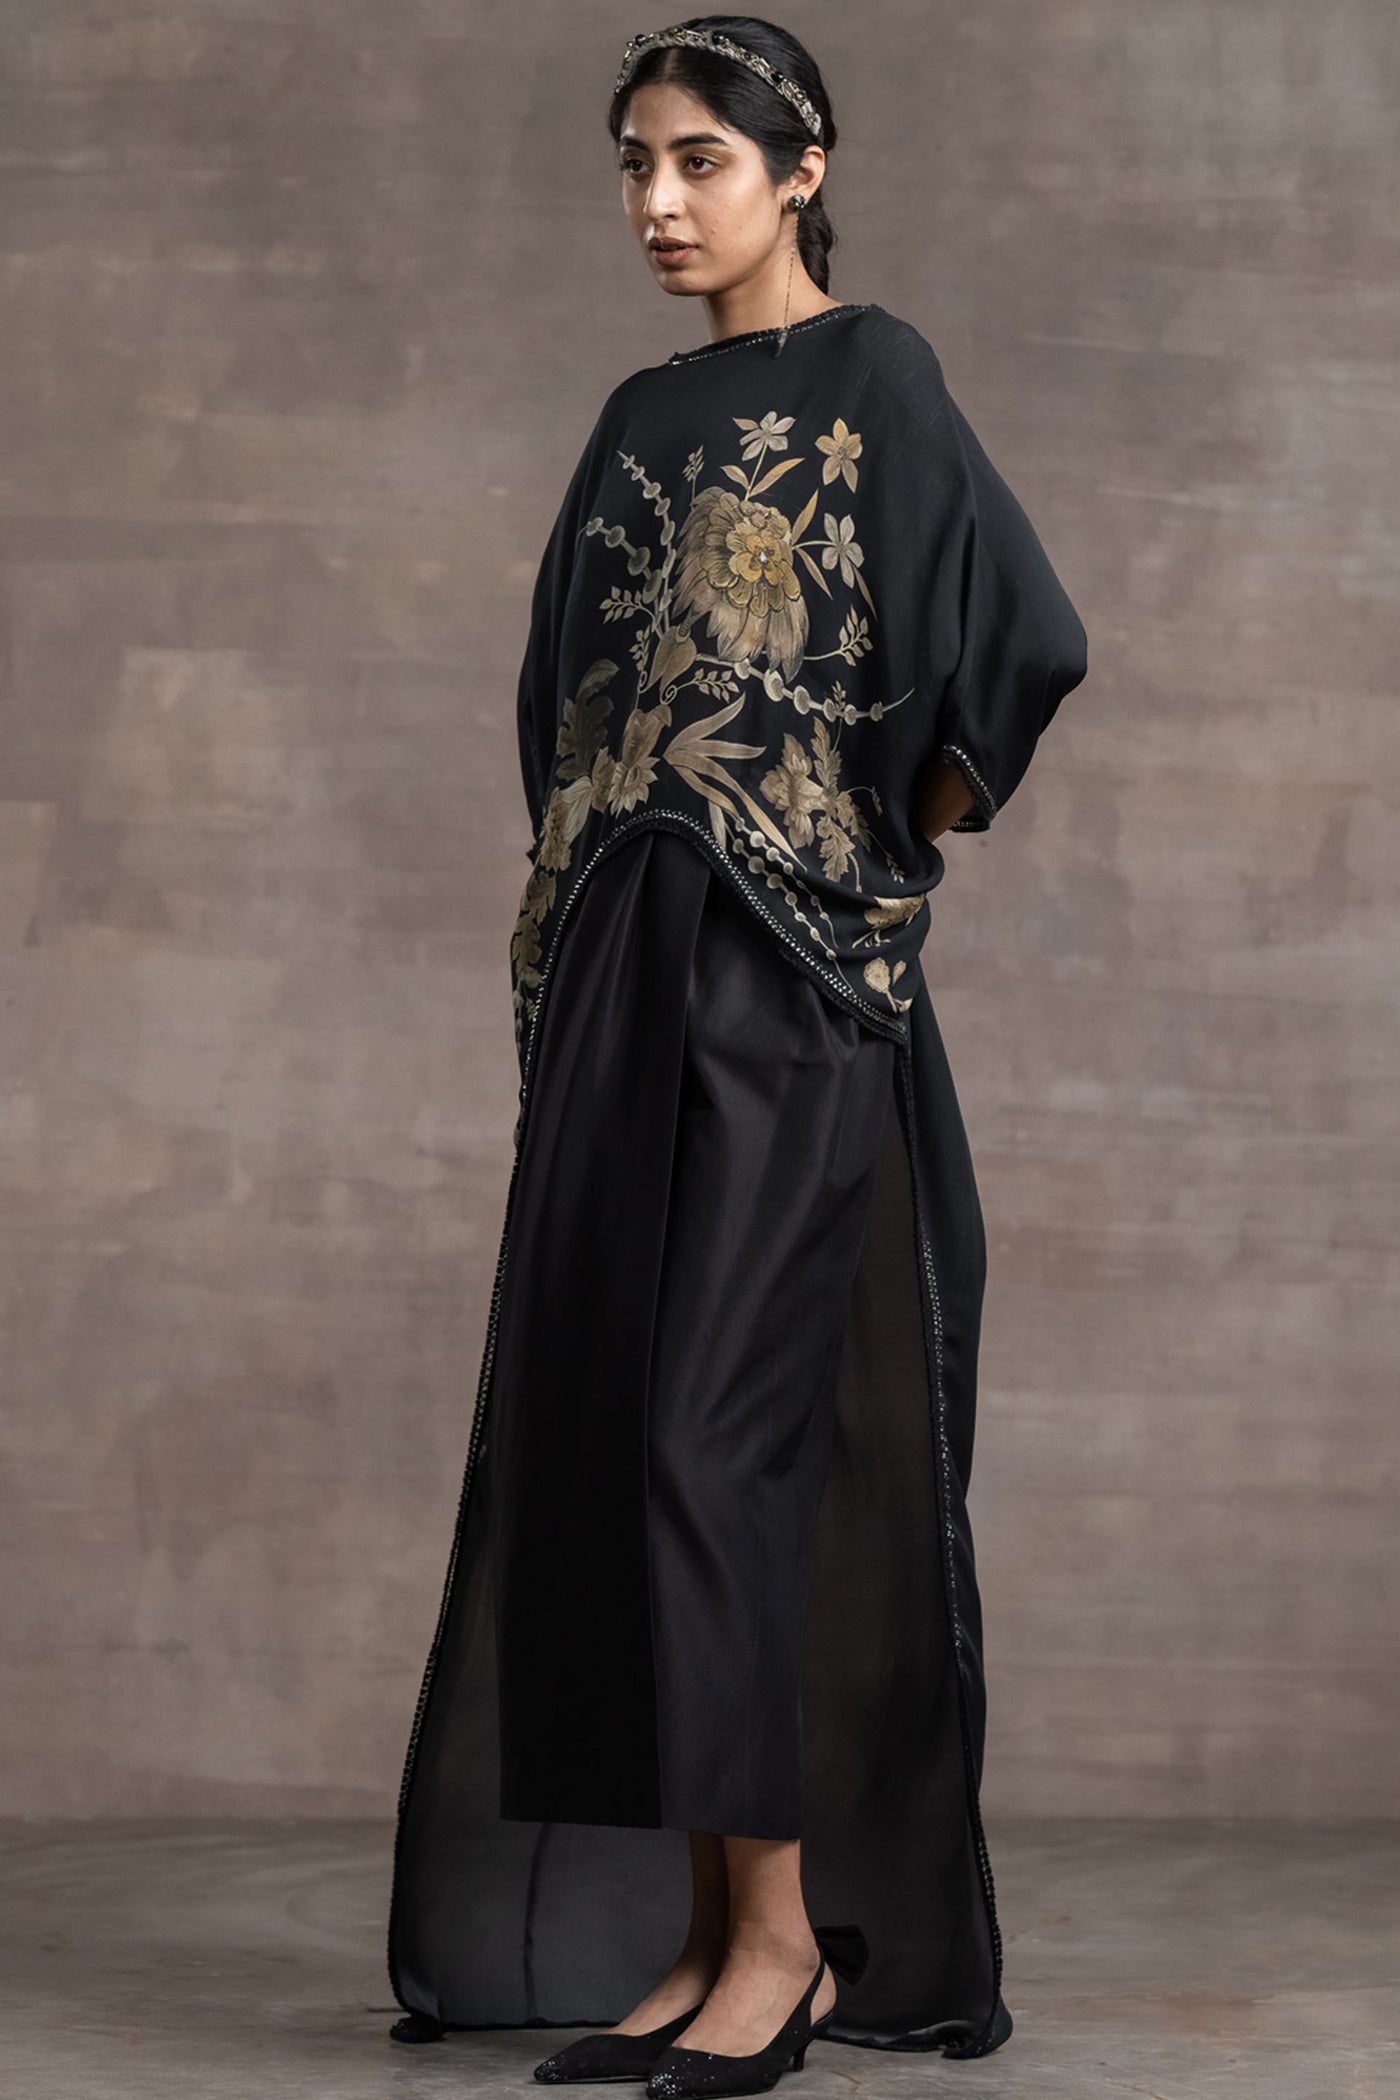 Tarun tahiliani Asymmetrical Top With Pegged Skirt black indian designer wear bridal wedding online shopping melange singapore